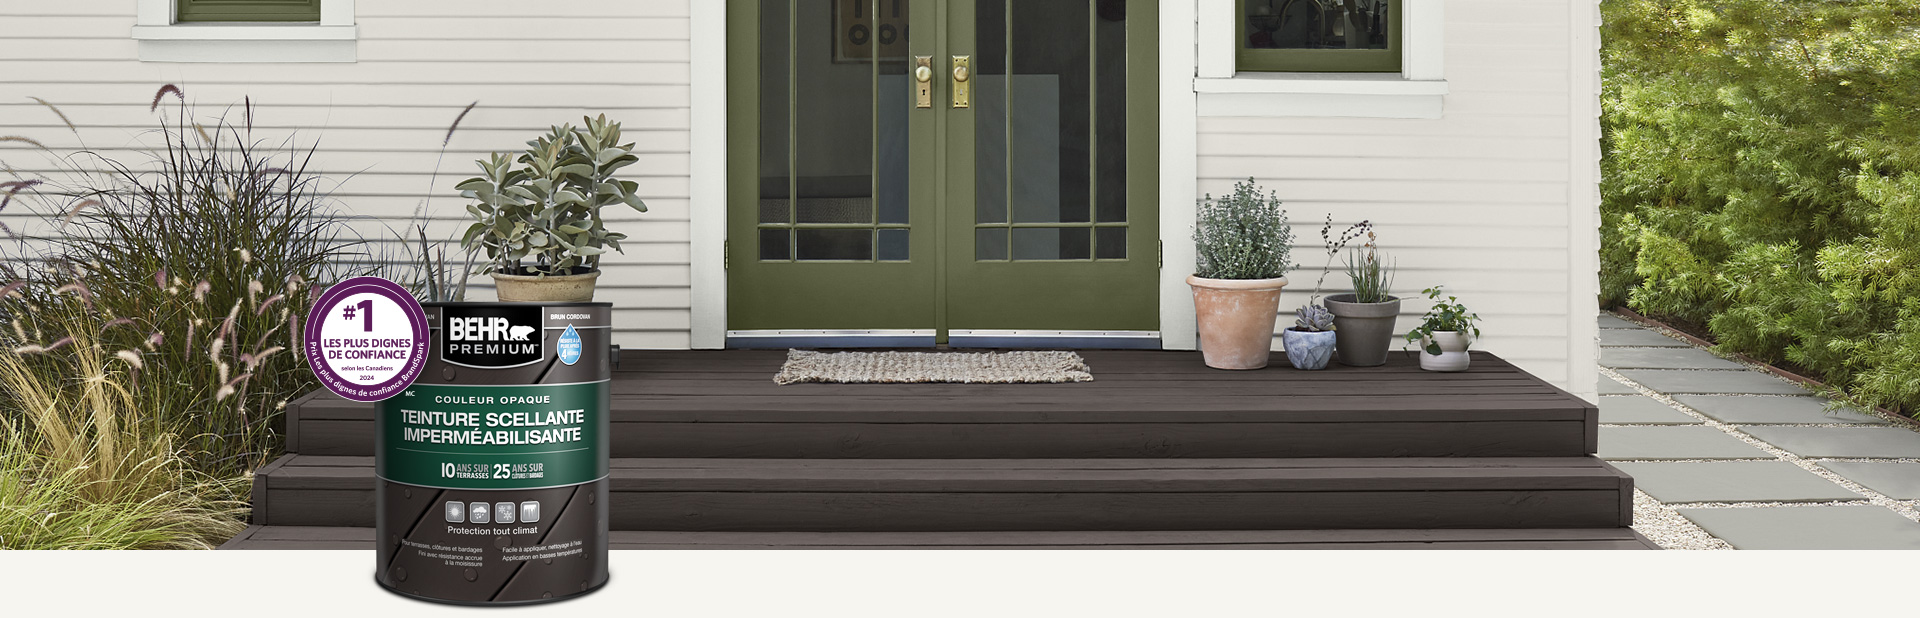 Un contenant de teinture semi-transparente pour bois Behr Premium avec une terrasse en bois en arrière-plan